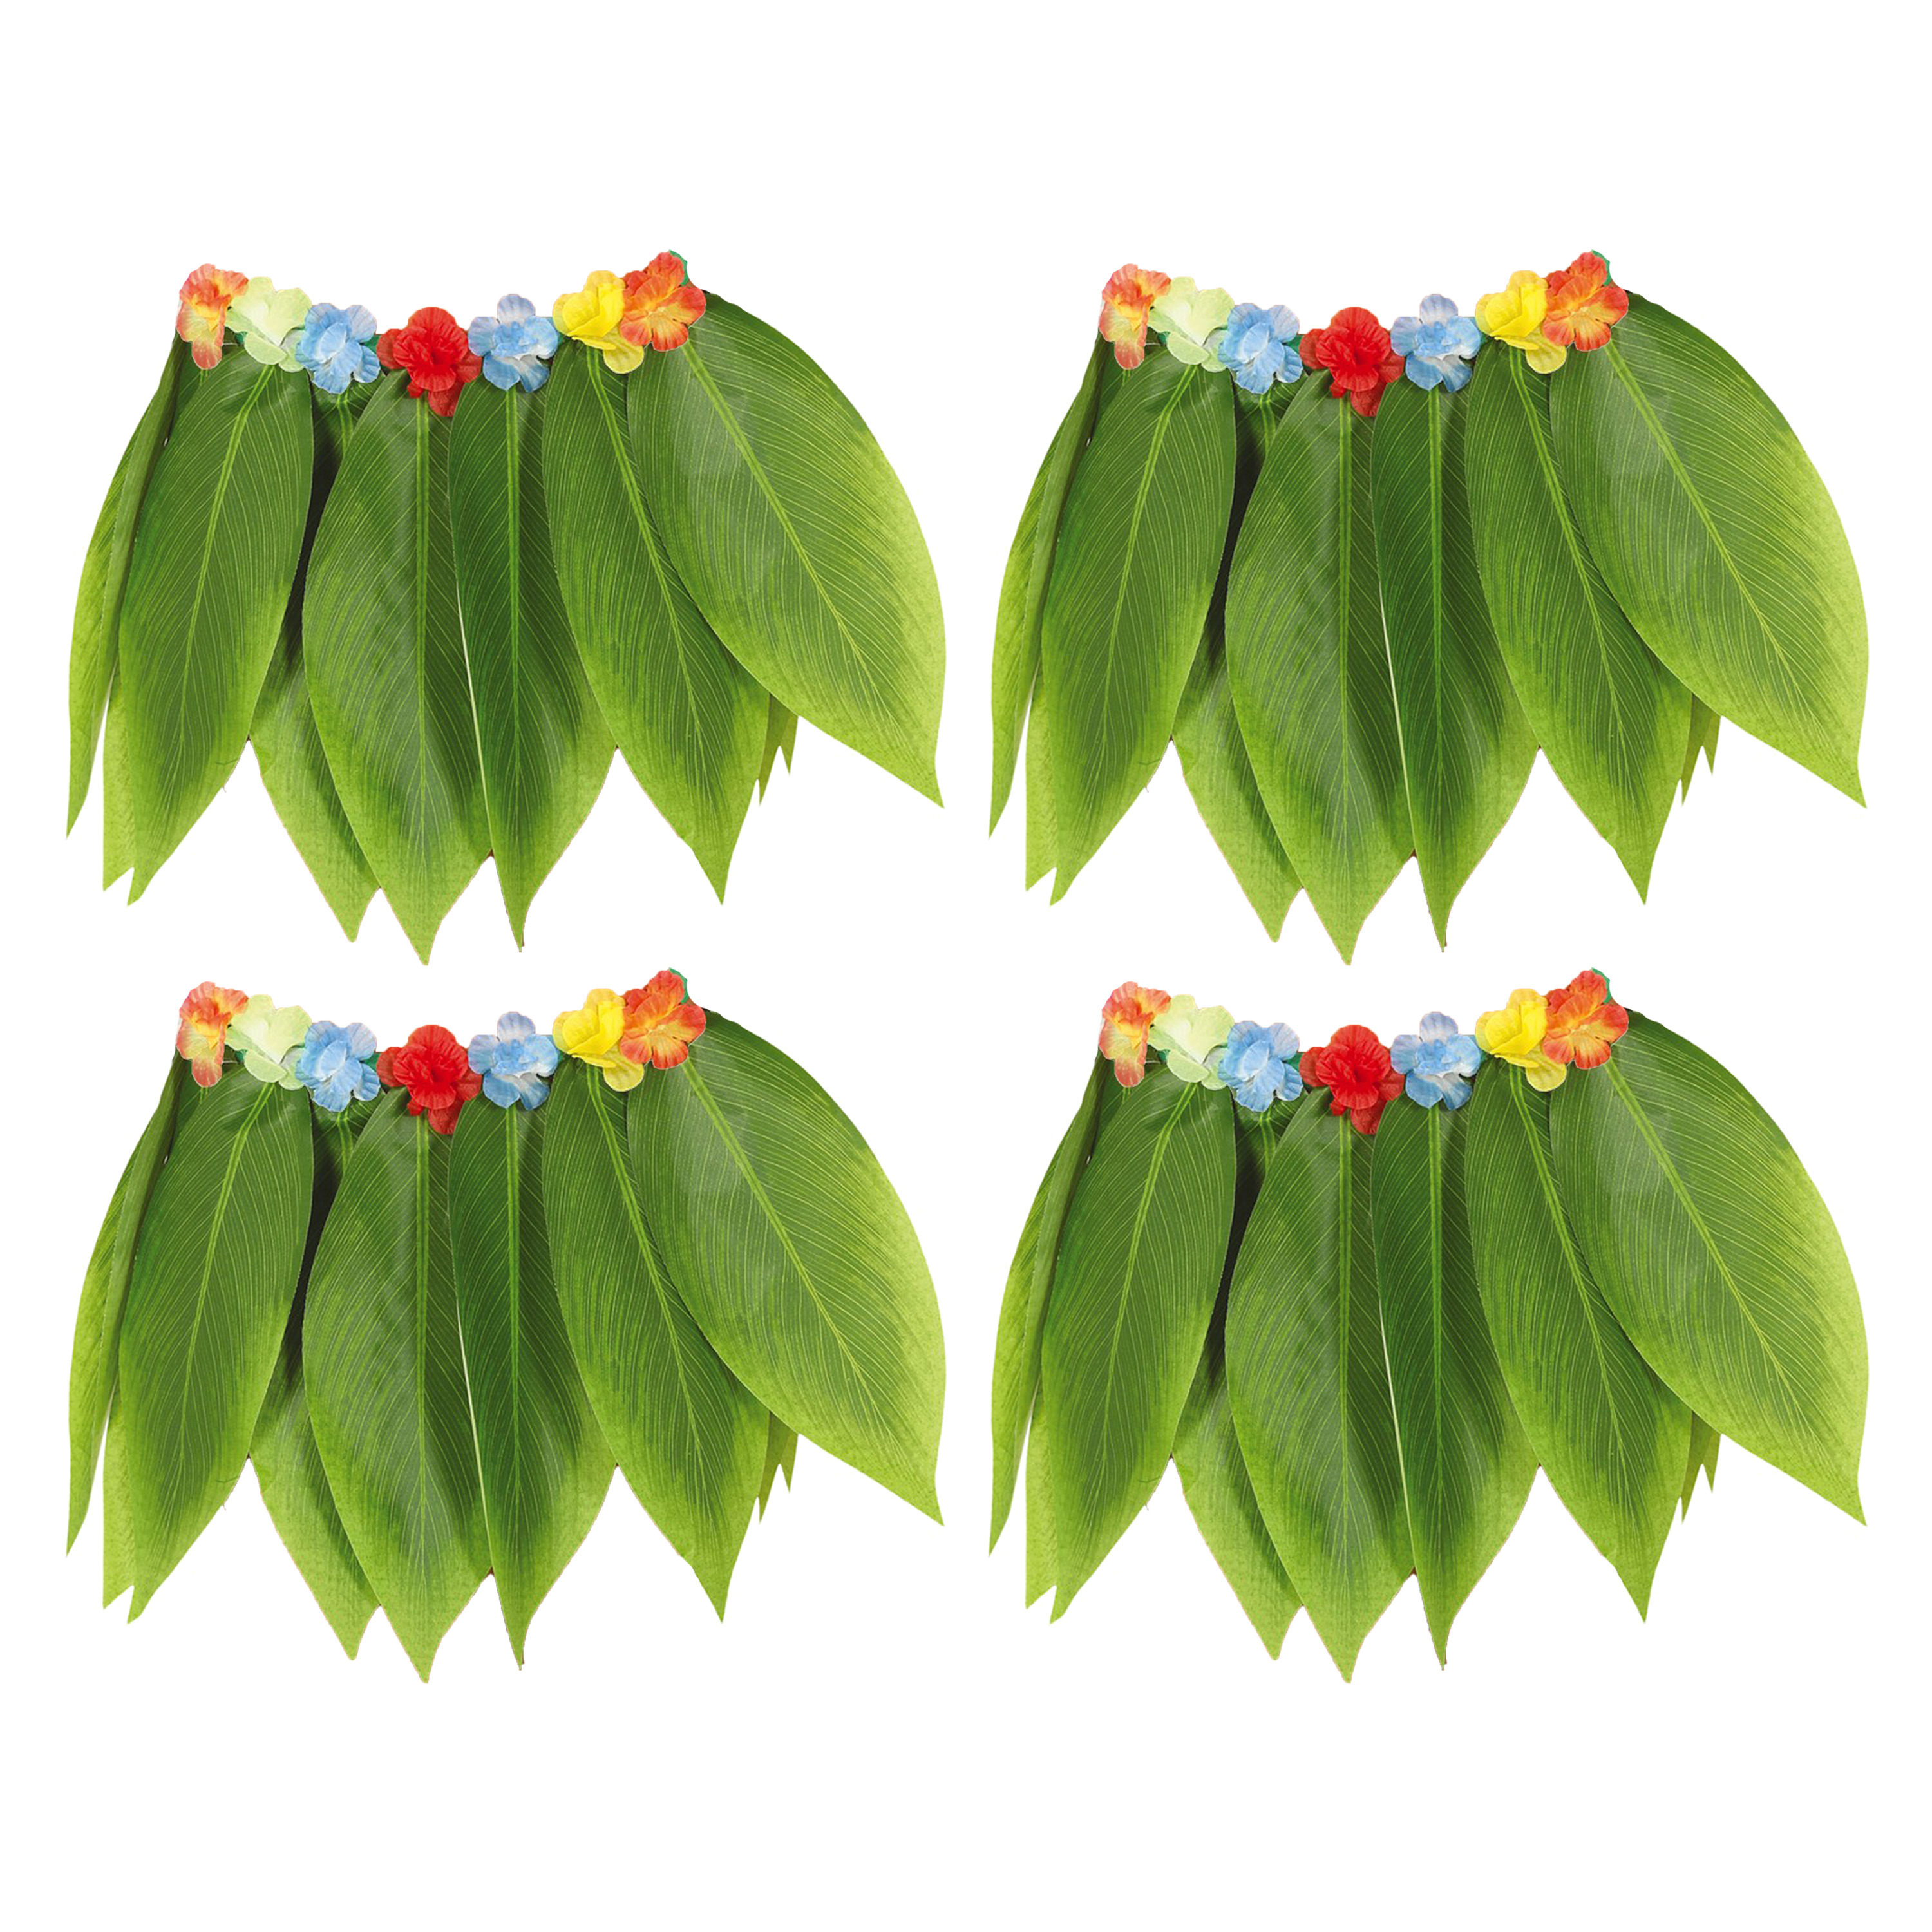 Hawaii verkleed rokje met bladeren - 4x - voor volwassenen - groen - 38 cm - hoela rokje - tropisch Top Merken Winkel